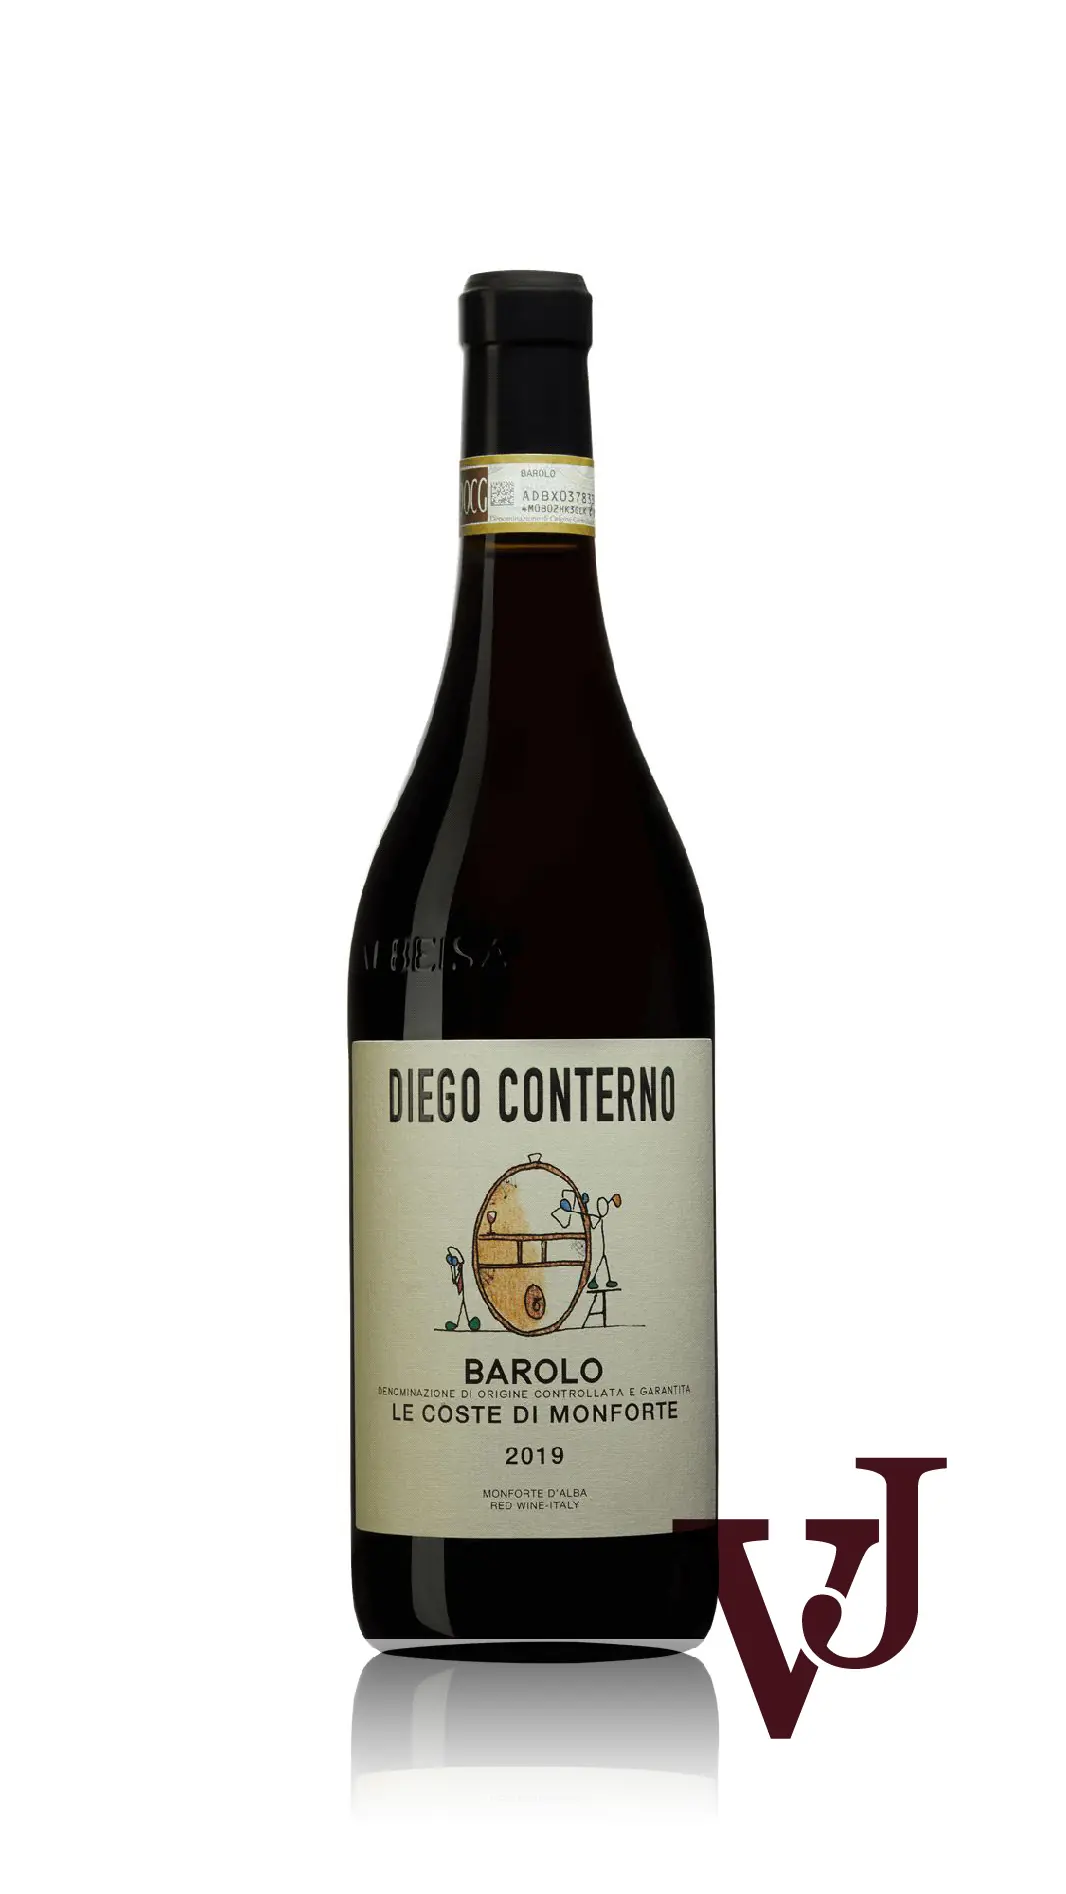 Rött vin - Barolo Le Coste di Monforte 2019 artikel nummer 9306901 från producenten Diego Conterno från Italien - Vinjournalen.se